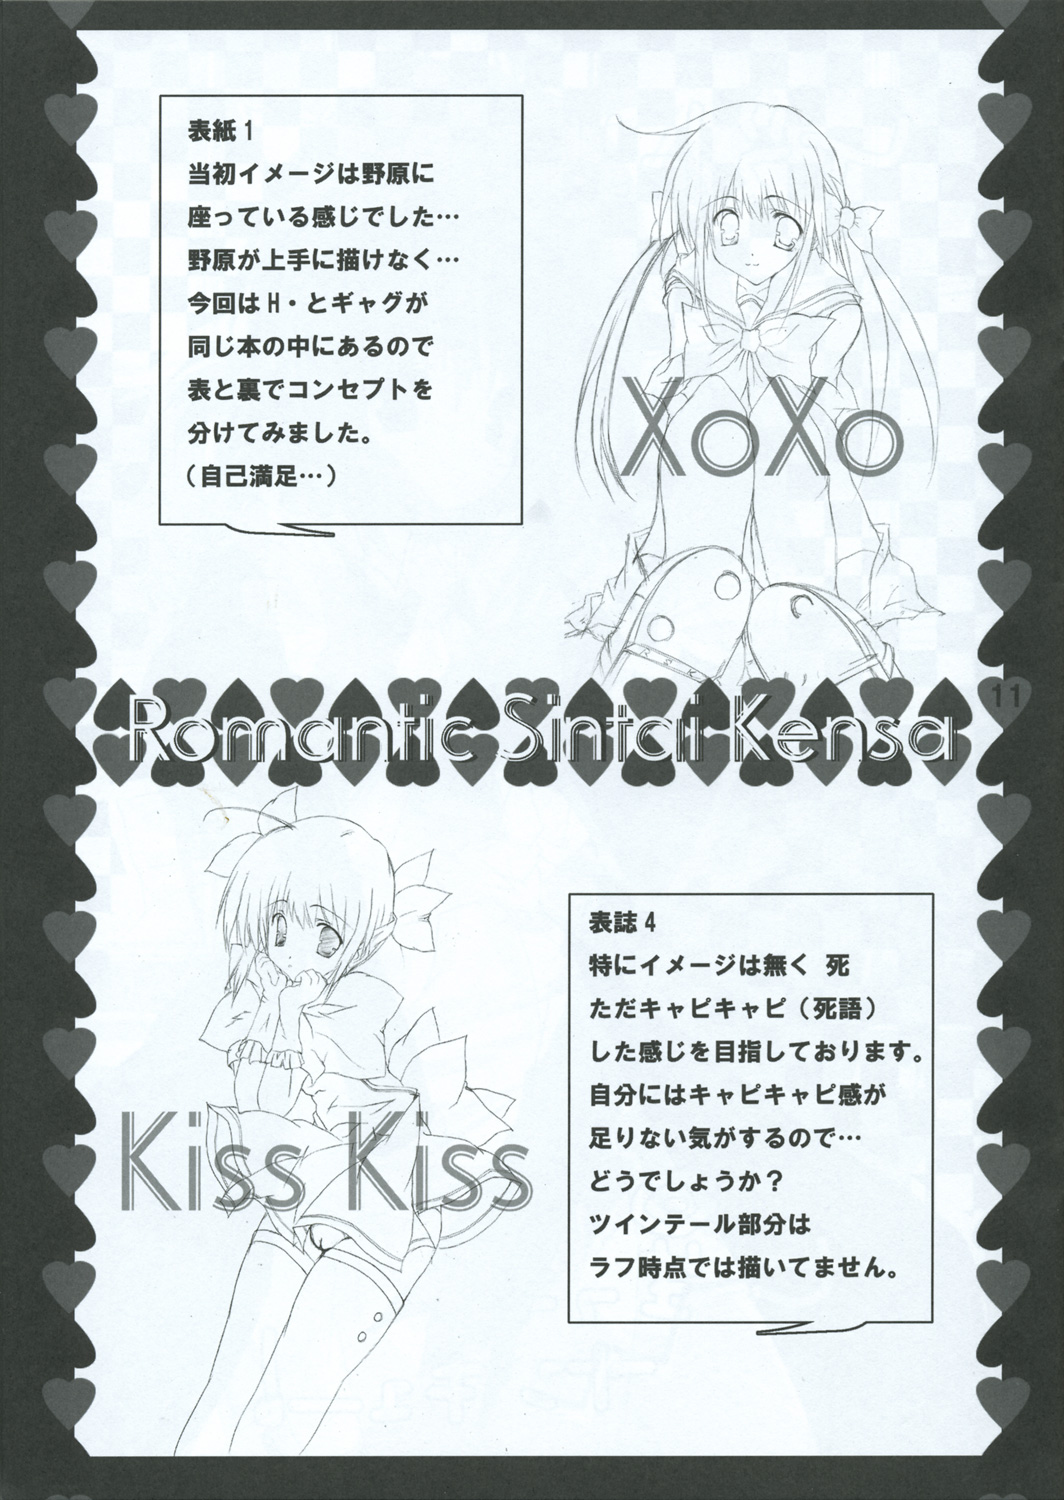 (サンクリ29) [ロマンティック身体検査。 (中村べーた)] XoXo/kiss kiss (ハヤテのごとく!)